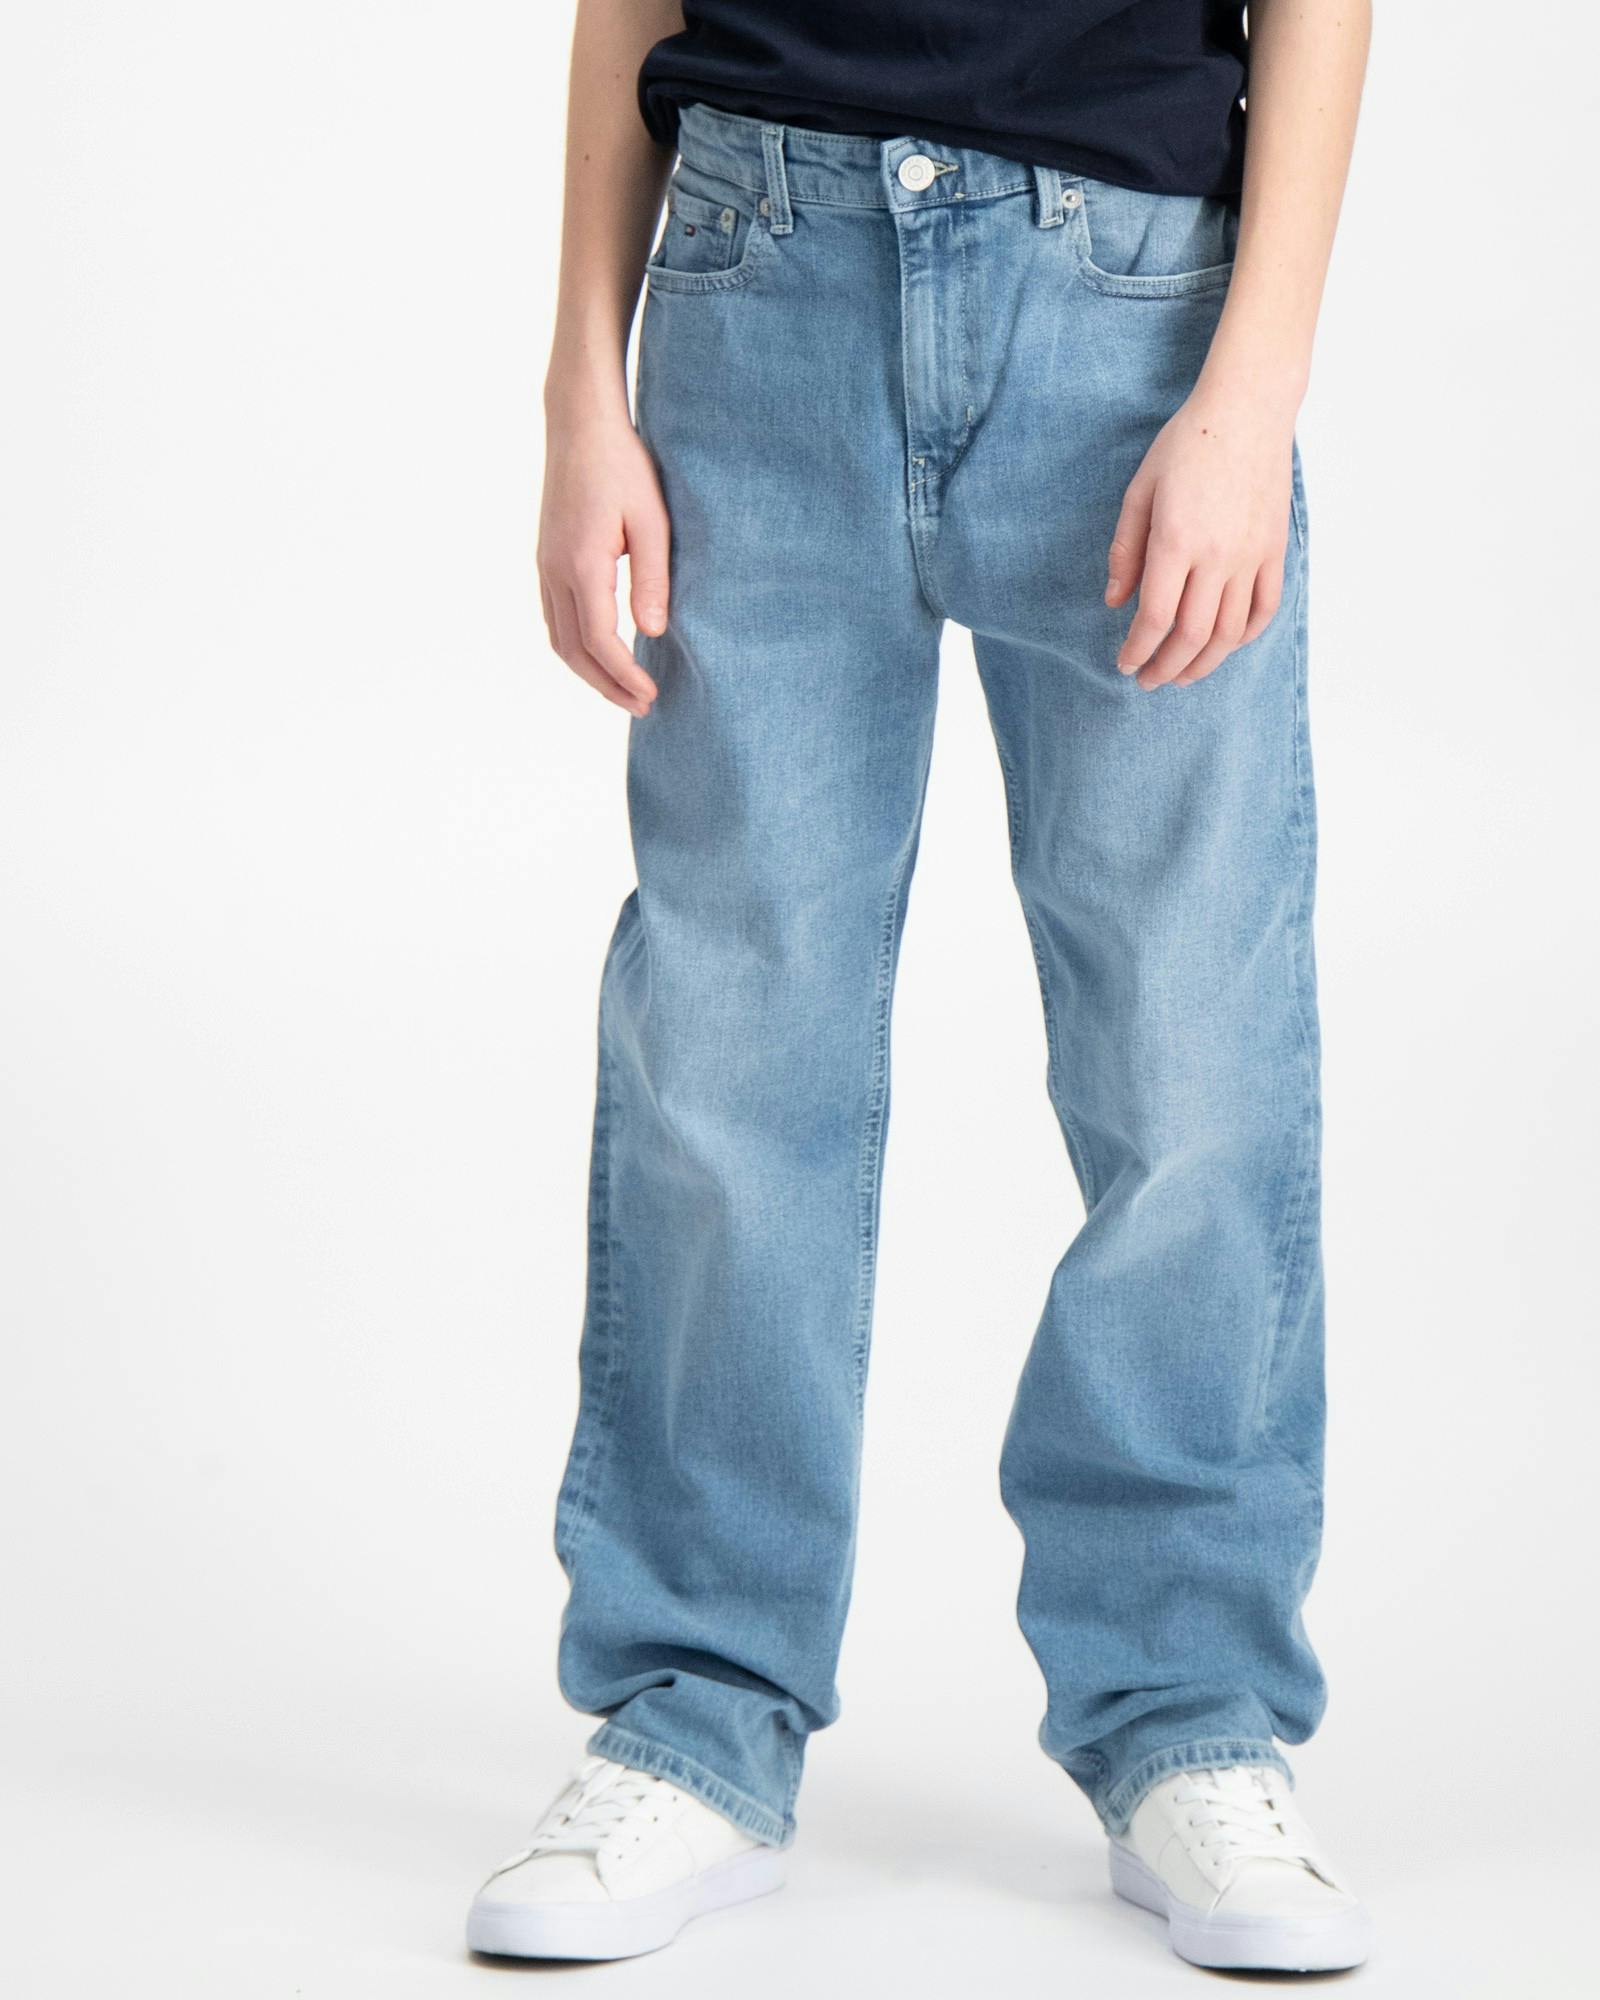 Tommy Hilfiger Jeans für Brand Kids Store und Jugendliche Kinder 